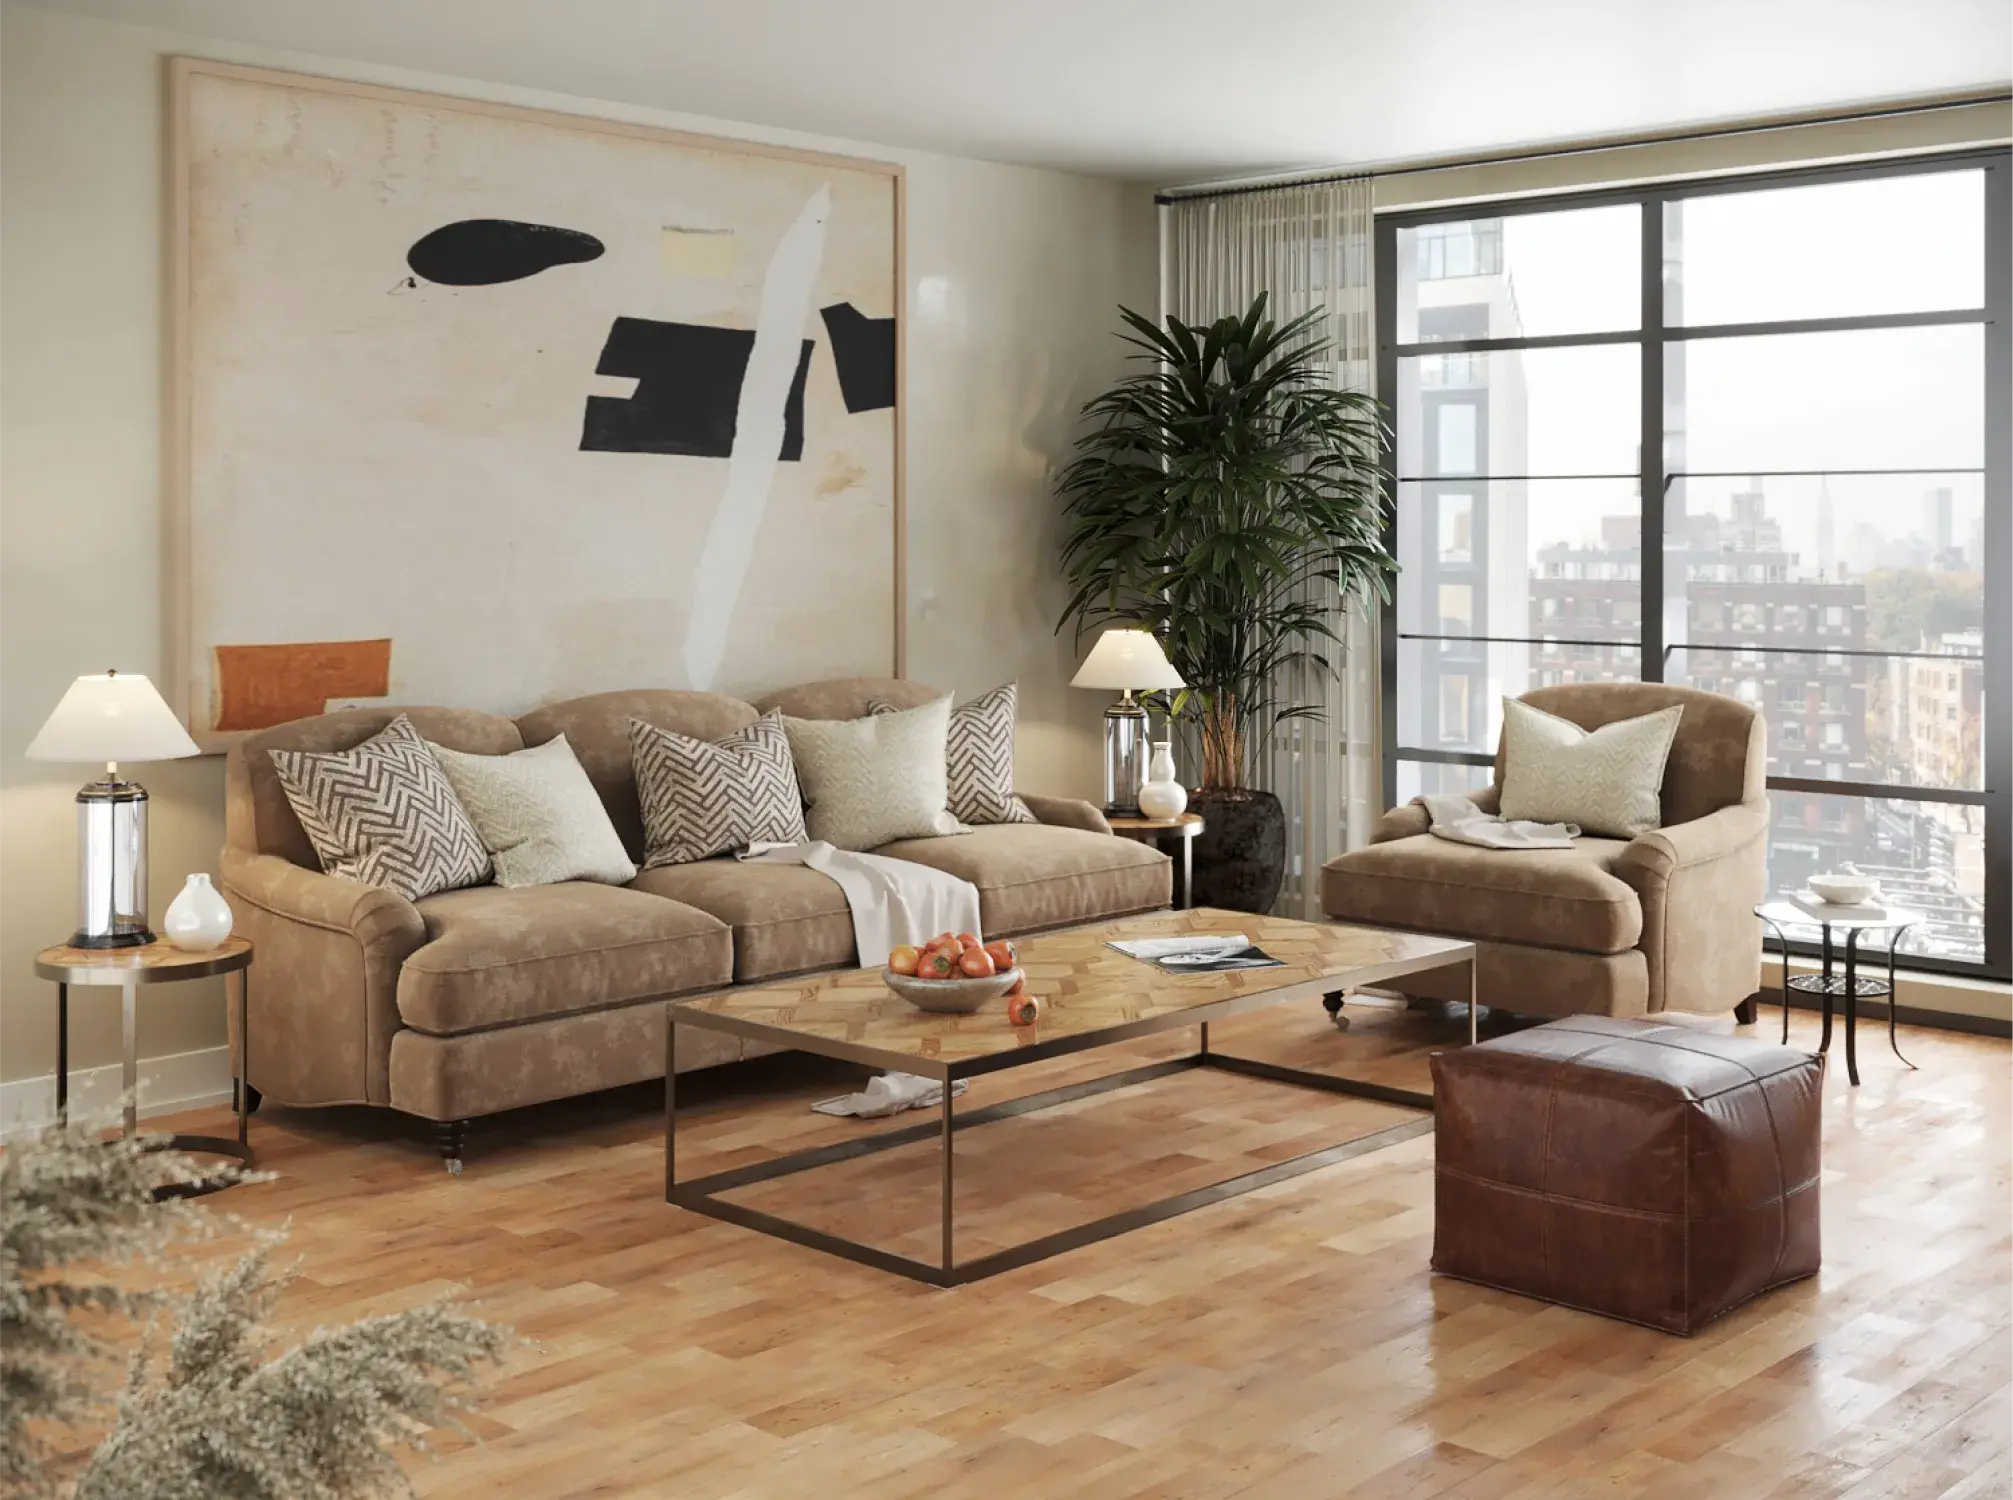 Living room 3D render